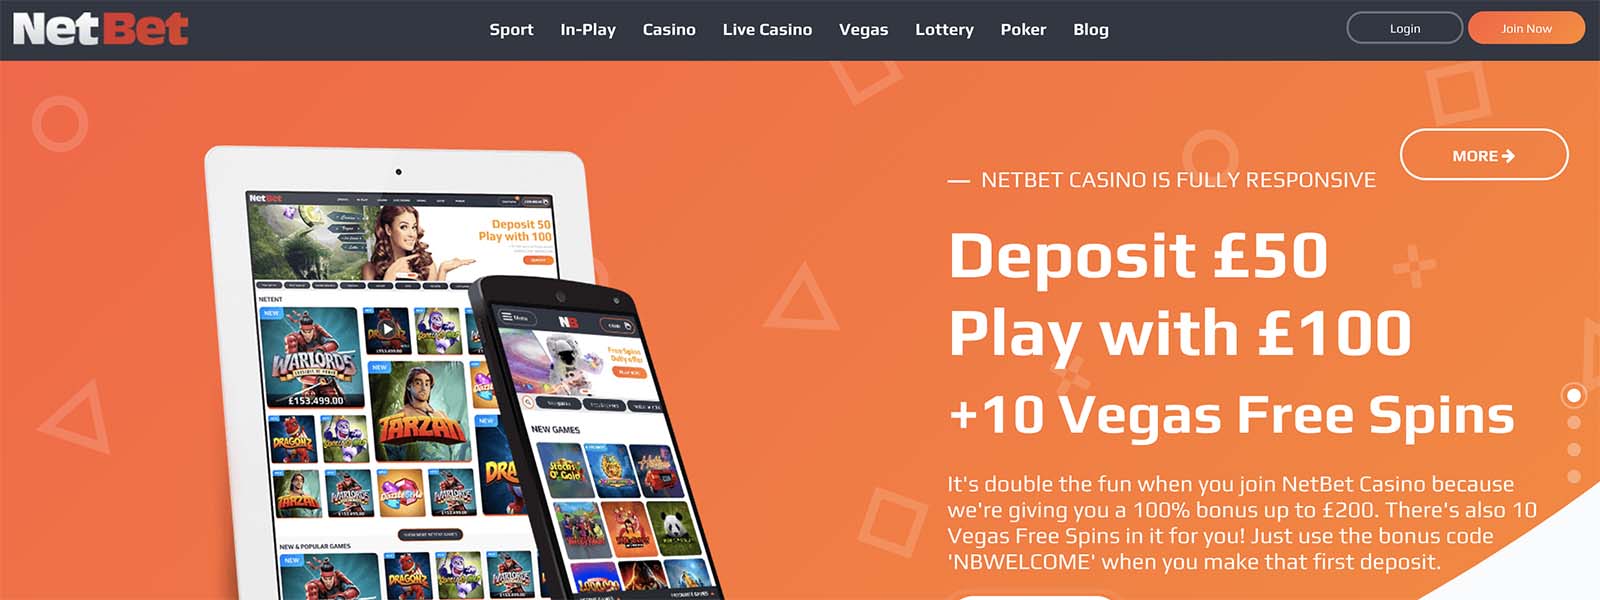 Net bet casino app download